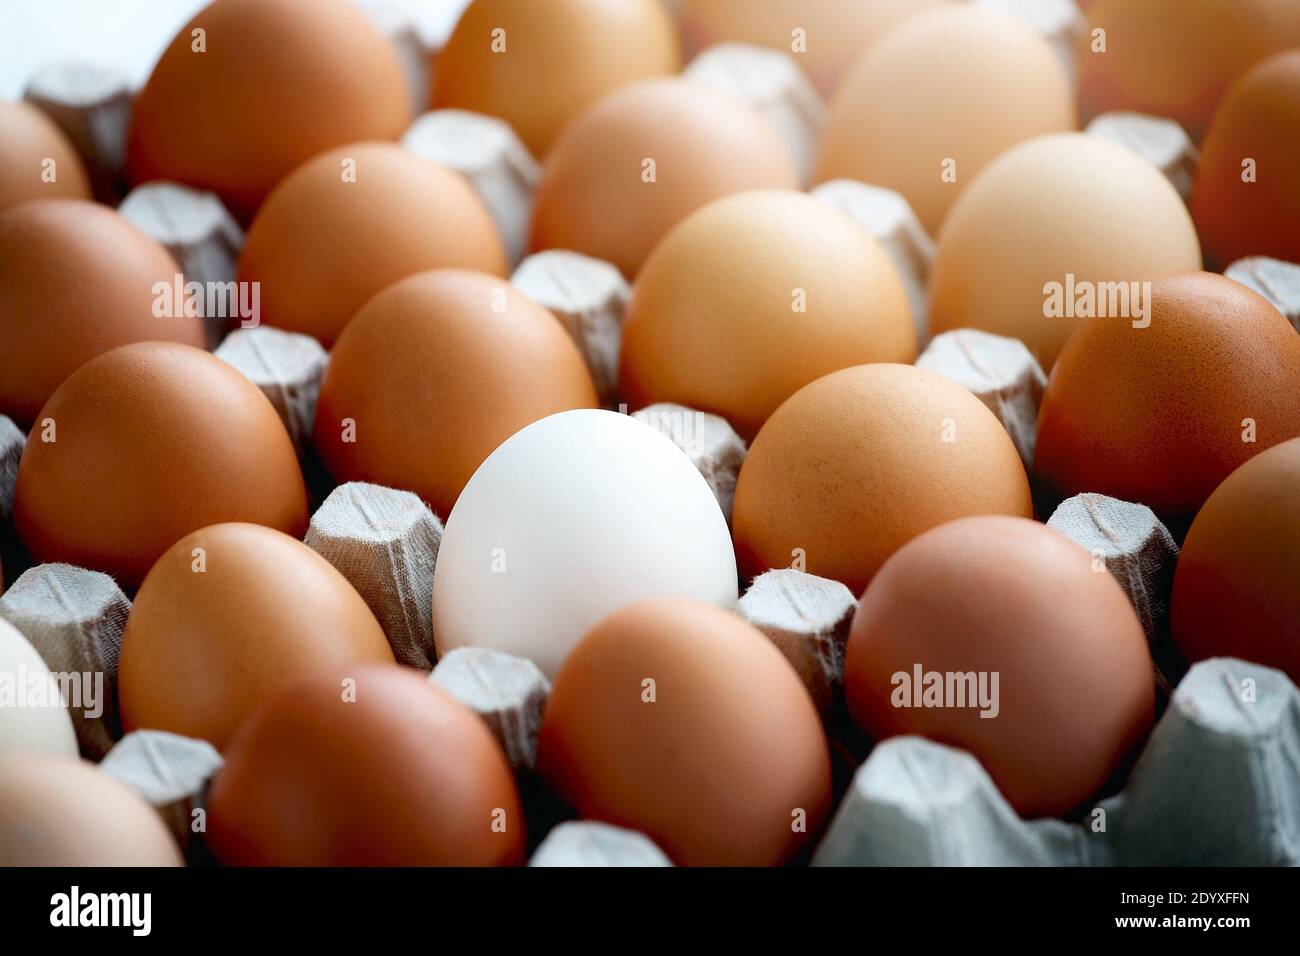 Auf einem Karton liegt ein weißes Hühnereier unter vielen gelben Eiern. Stockfoto